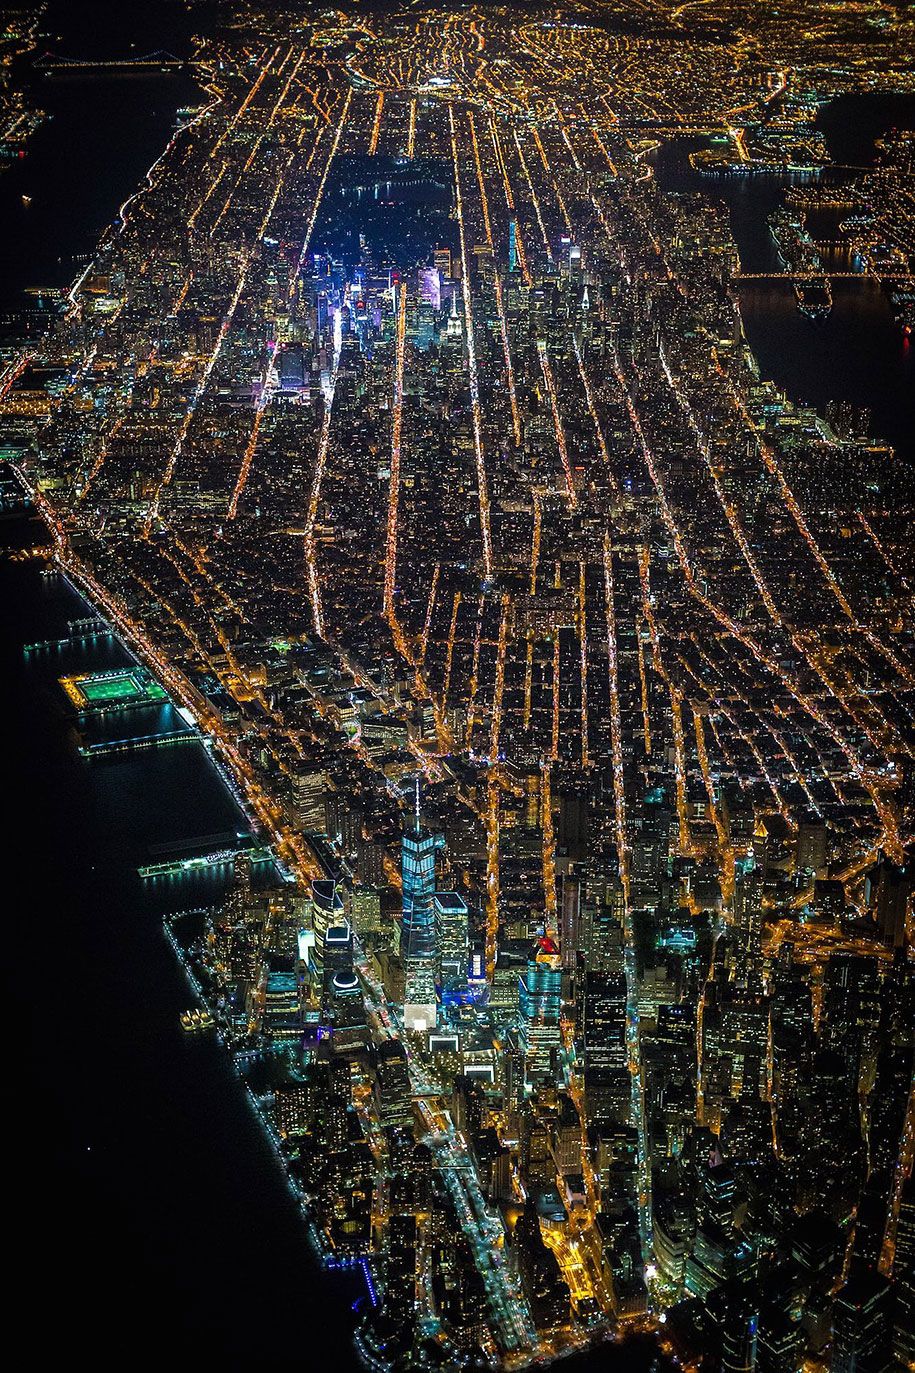 นิวยอร์ก - เมือง - ทางอากาศ-photopgrahy-vincent-laforet-5